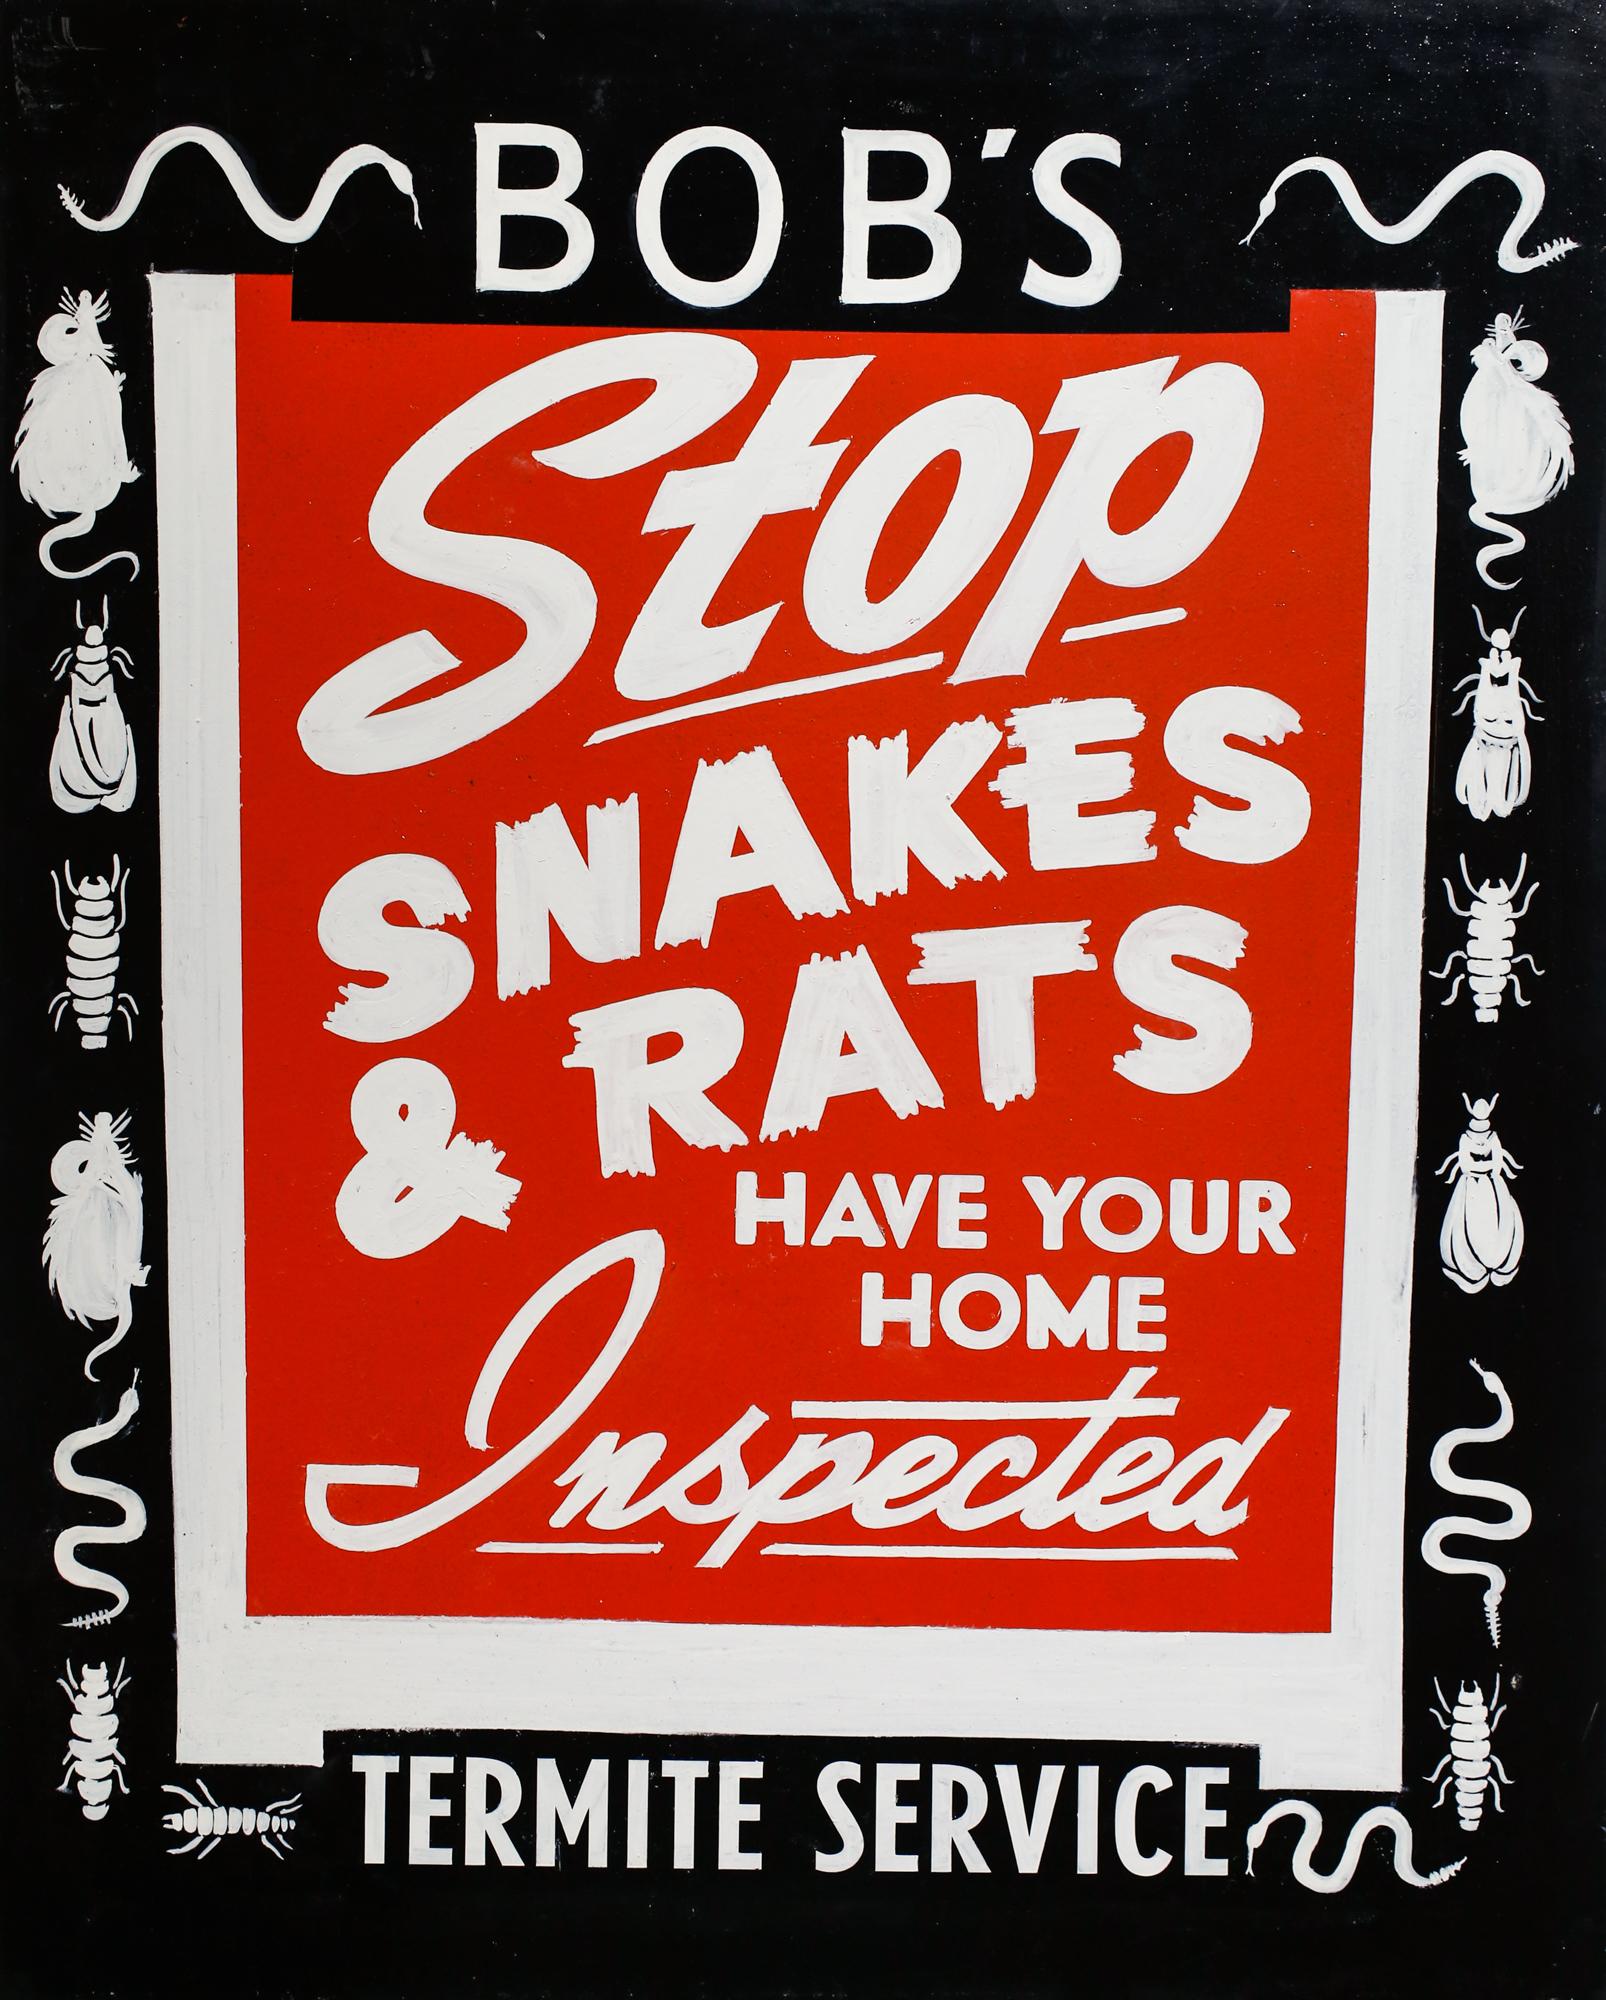 ""Bob's Termite Service", handbemaltes Schild, Typografie, Text, Blau, Rot-Weiß